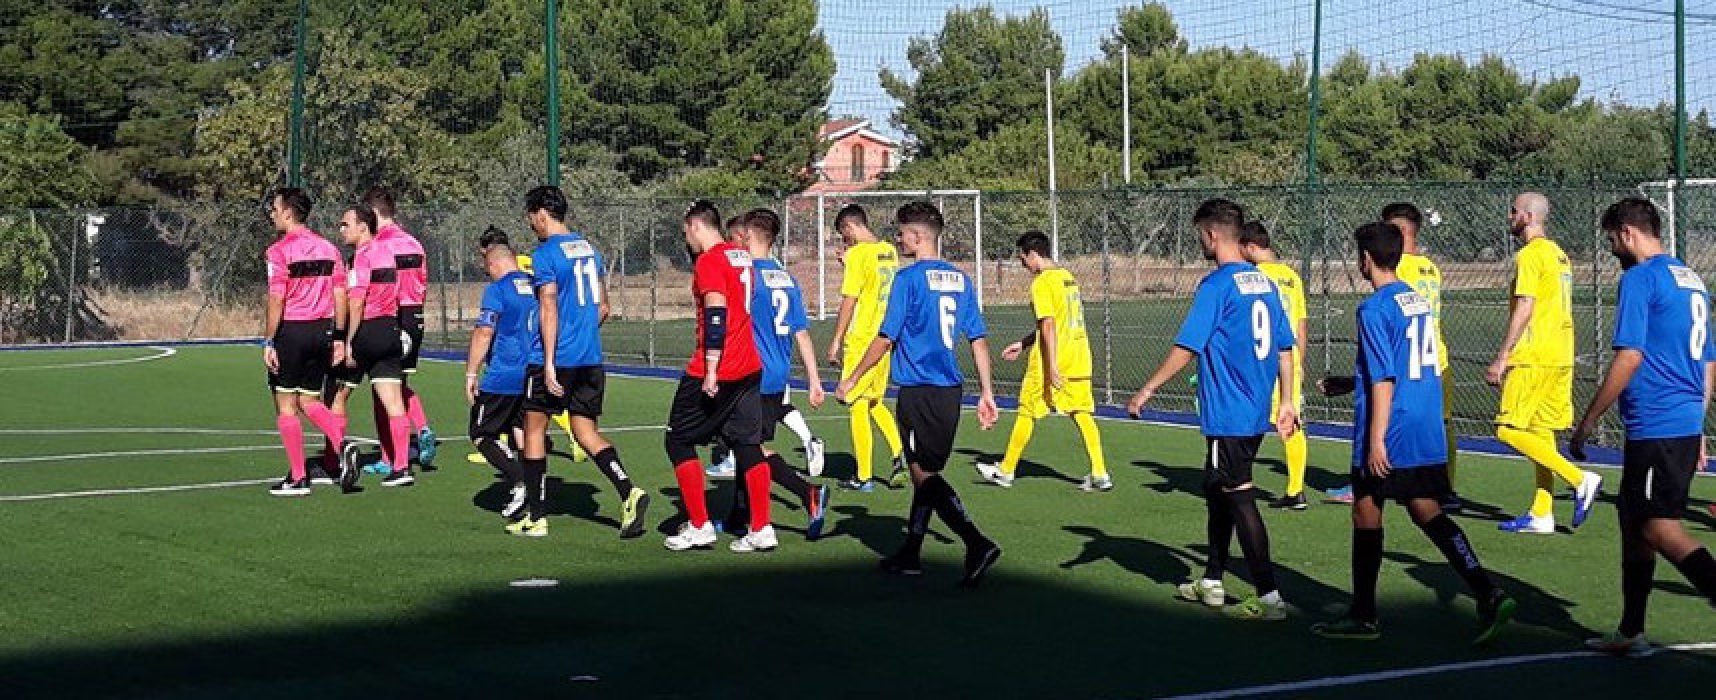 Sconfitte in trasferta per Futsal Bisceglie e Futbol Cinco